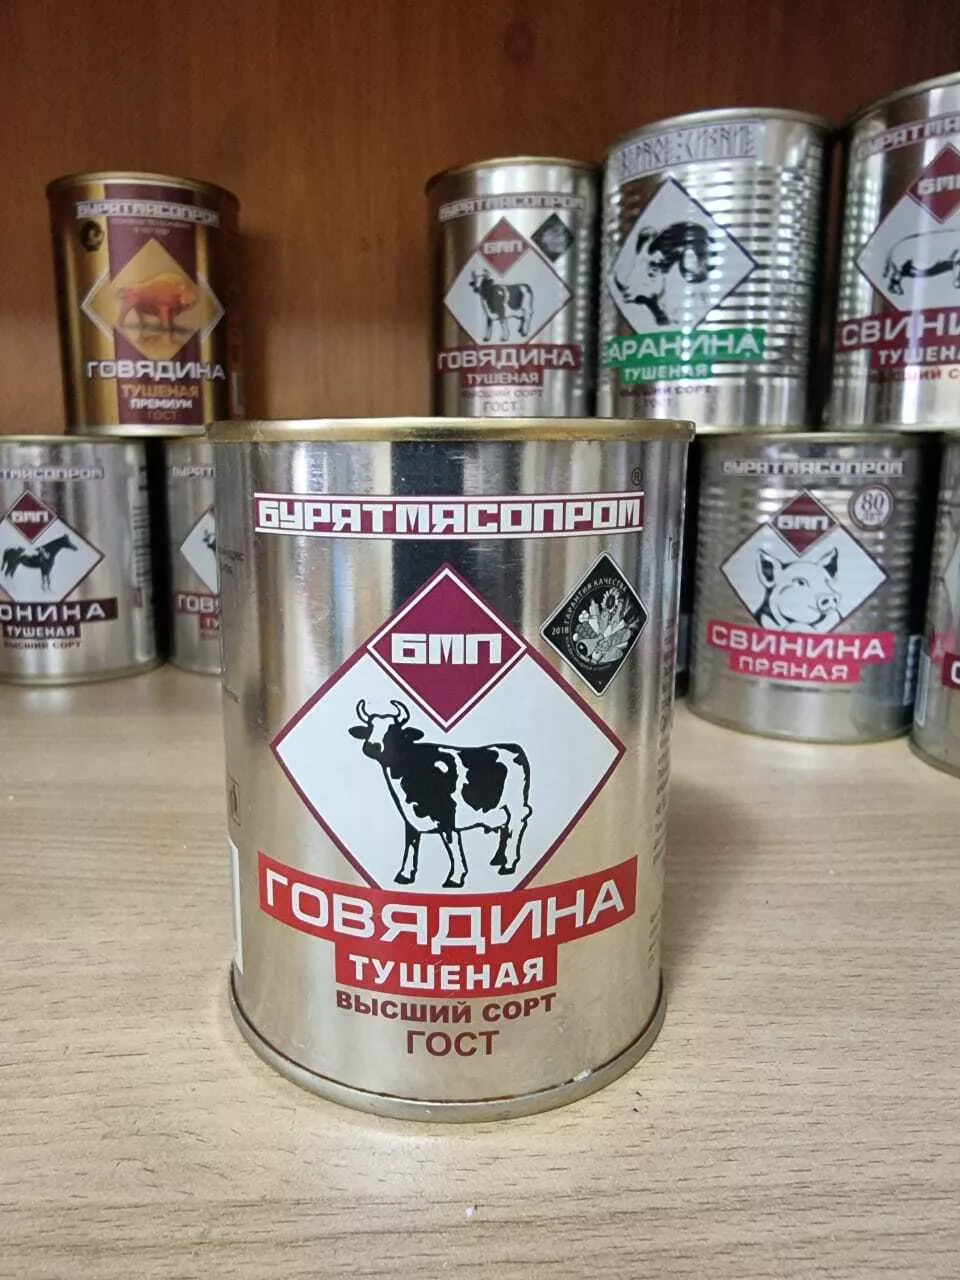 консервная продукция бурятмяспром в Барнауле 9